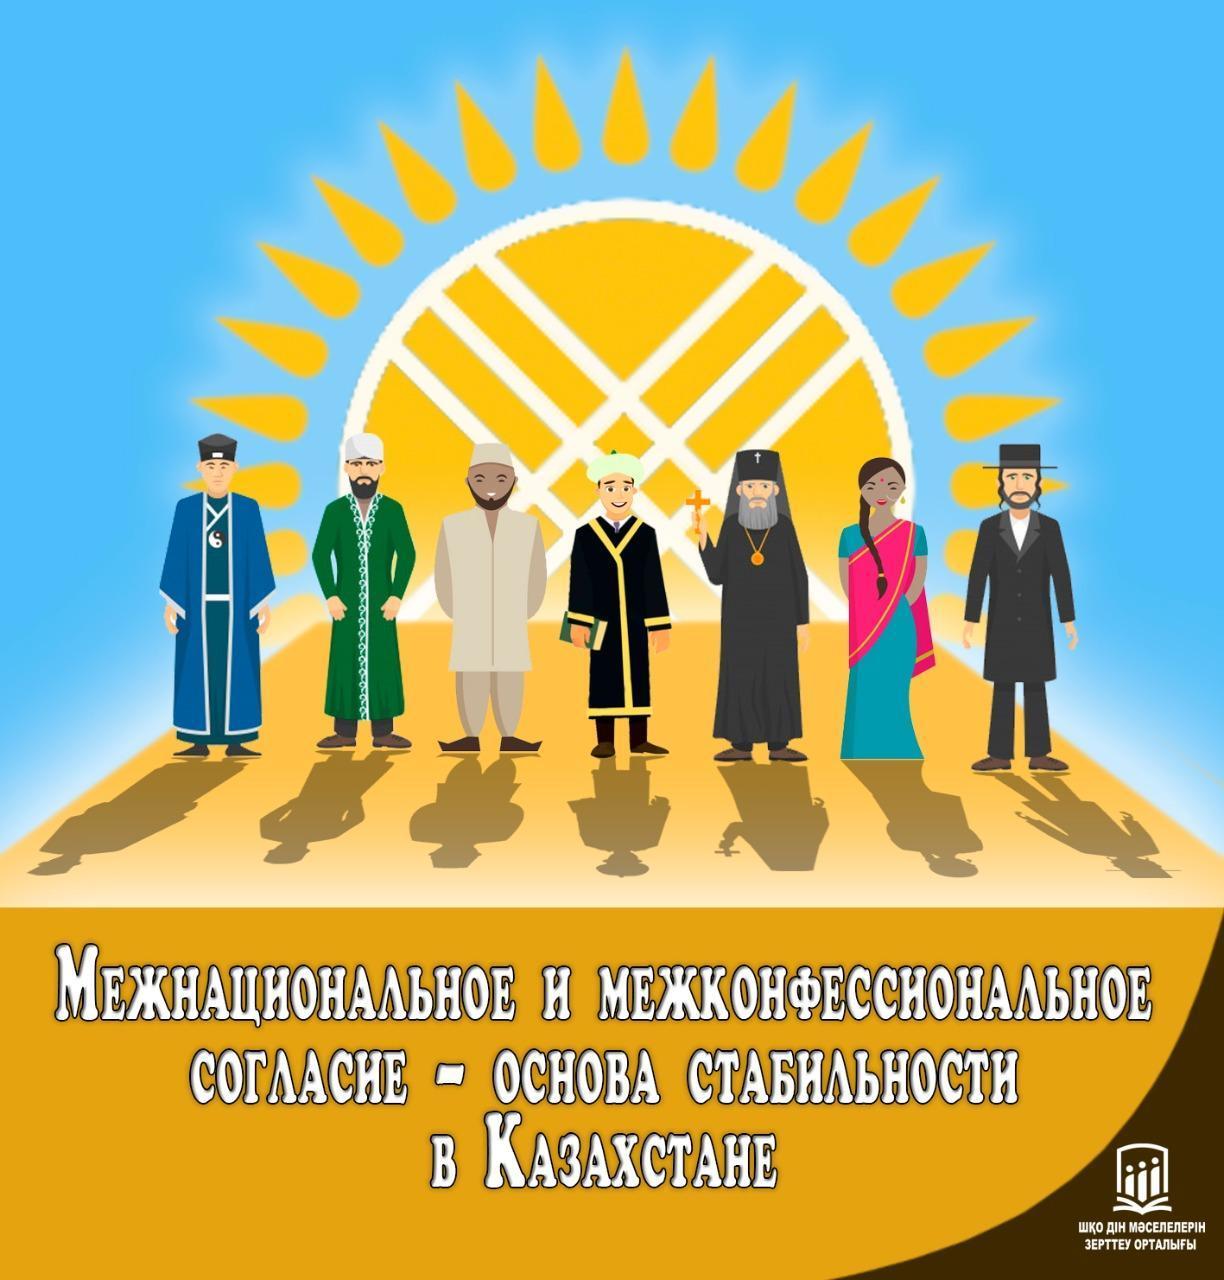 Конституция-честь и совесть свободной страны Казахстан